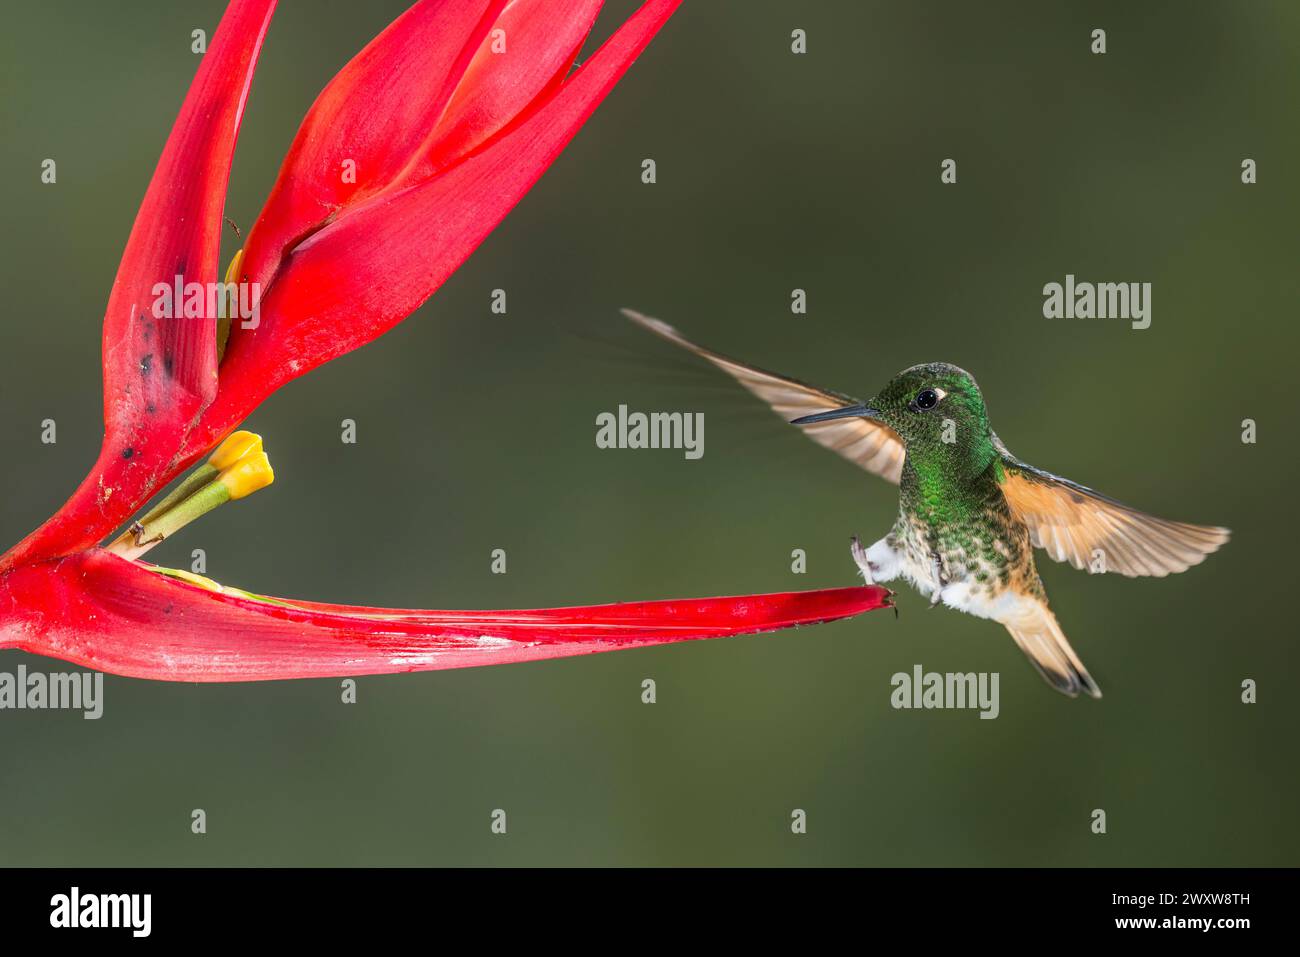 Coronetto dalla coda di bue (Boissonneaua flavescens) che si nutre di un fiore mentre vola, riserva di Bellavista, regione di Tandayapa, Ecuador, Sud America Foto Stock